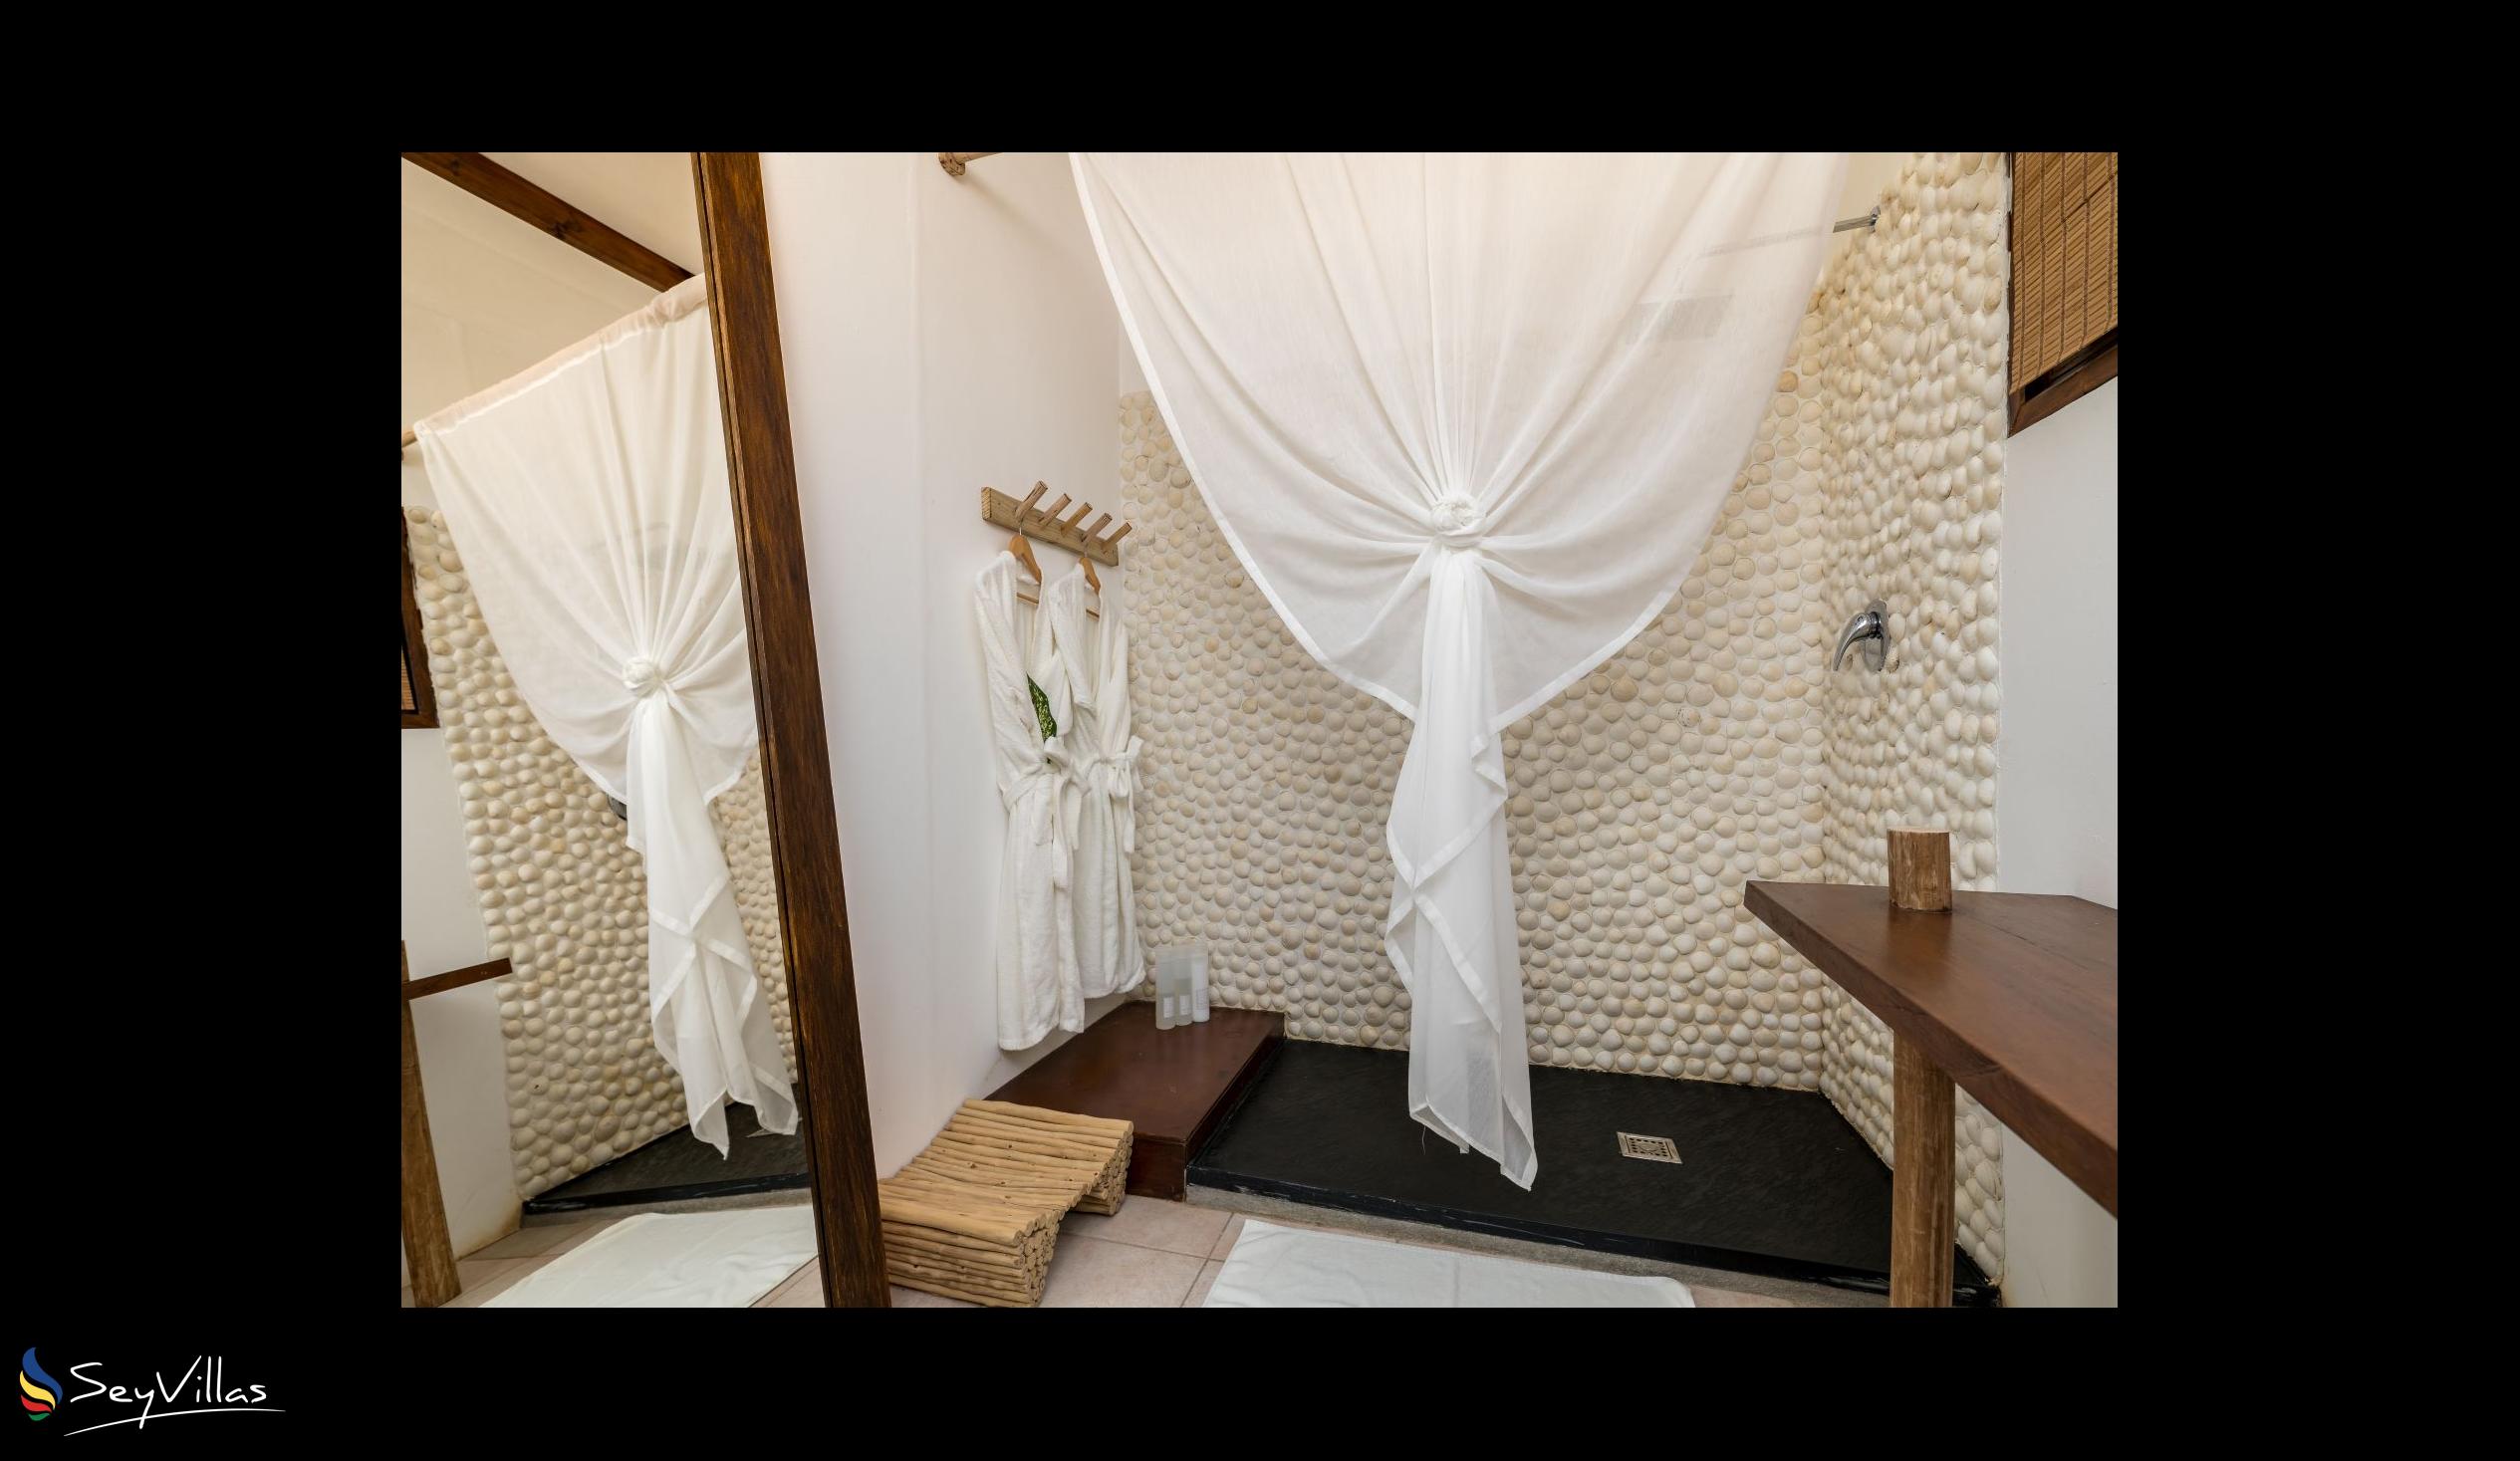 Photo 47: Bliss Hotel Praslin - Eden Garden - Superior Room - Praslin (Seychelles)